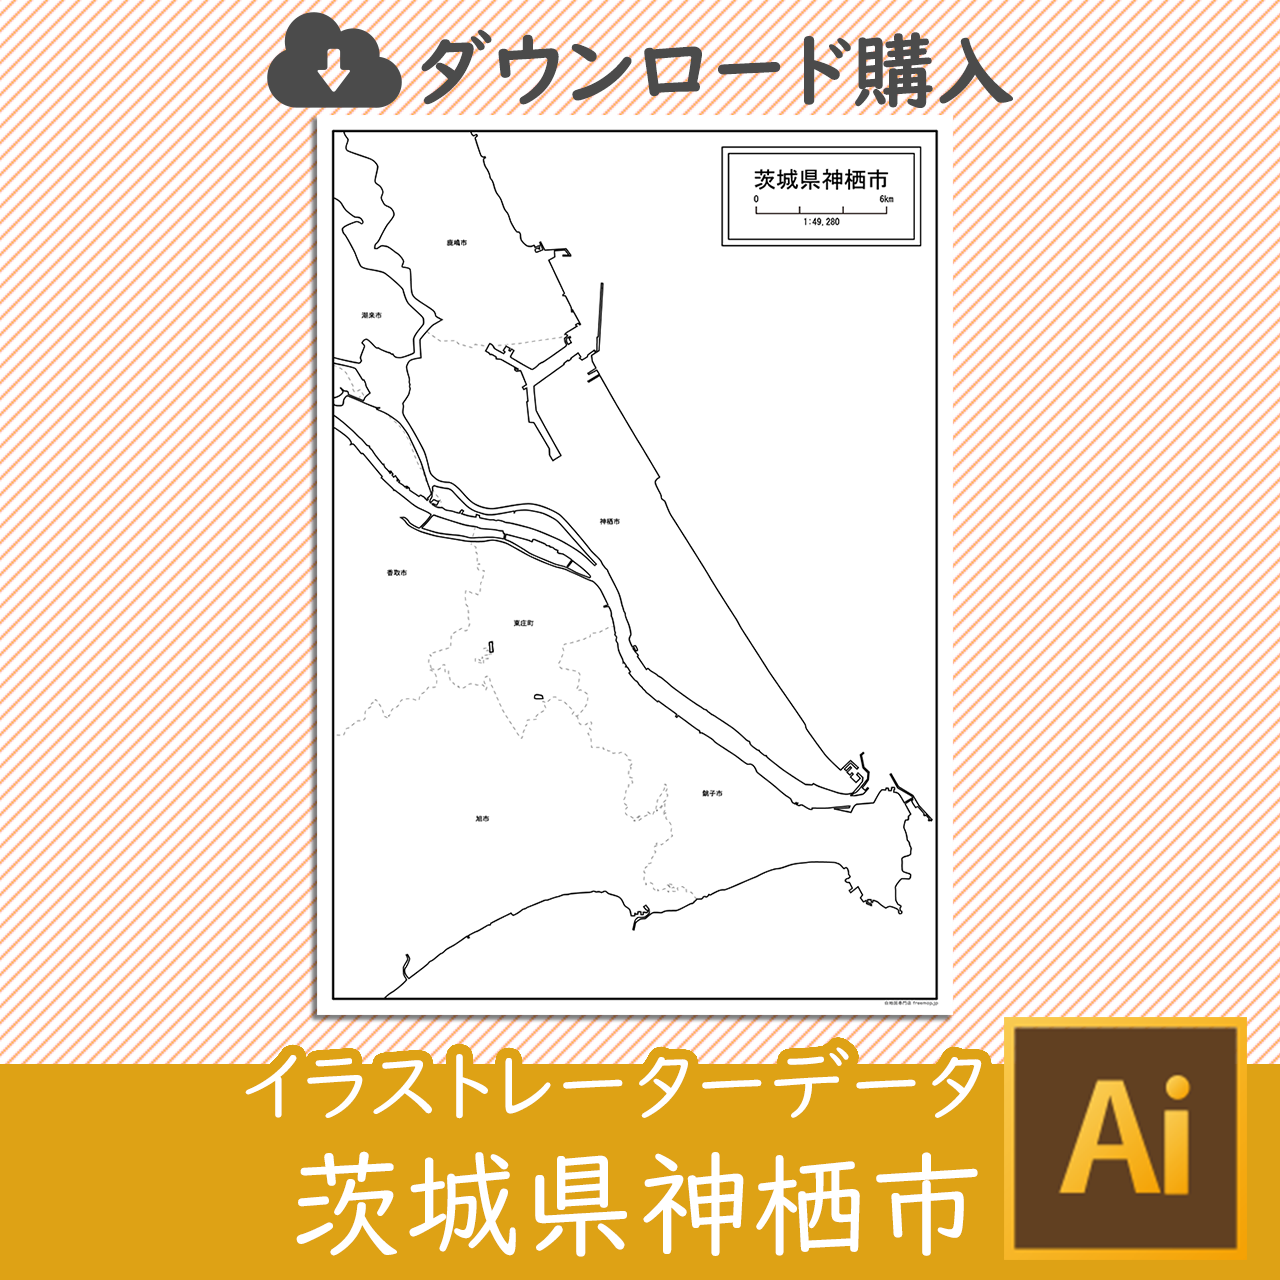 神栖市のaiデータのサムネイル画像